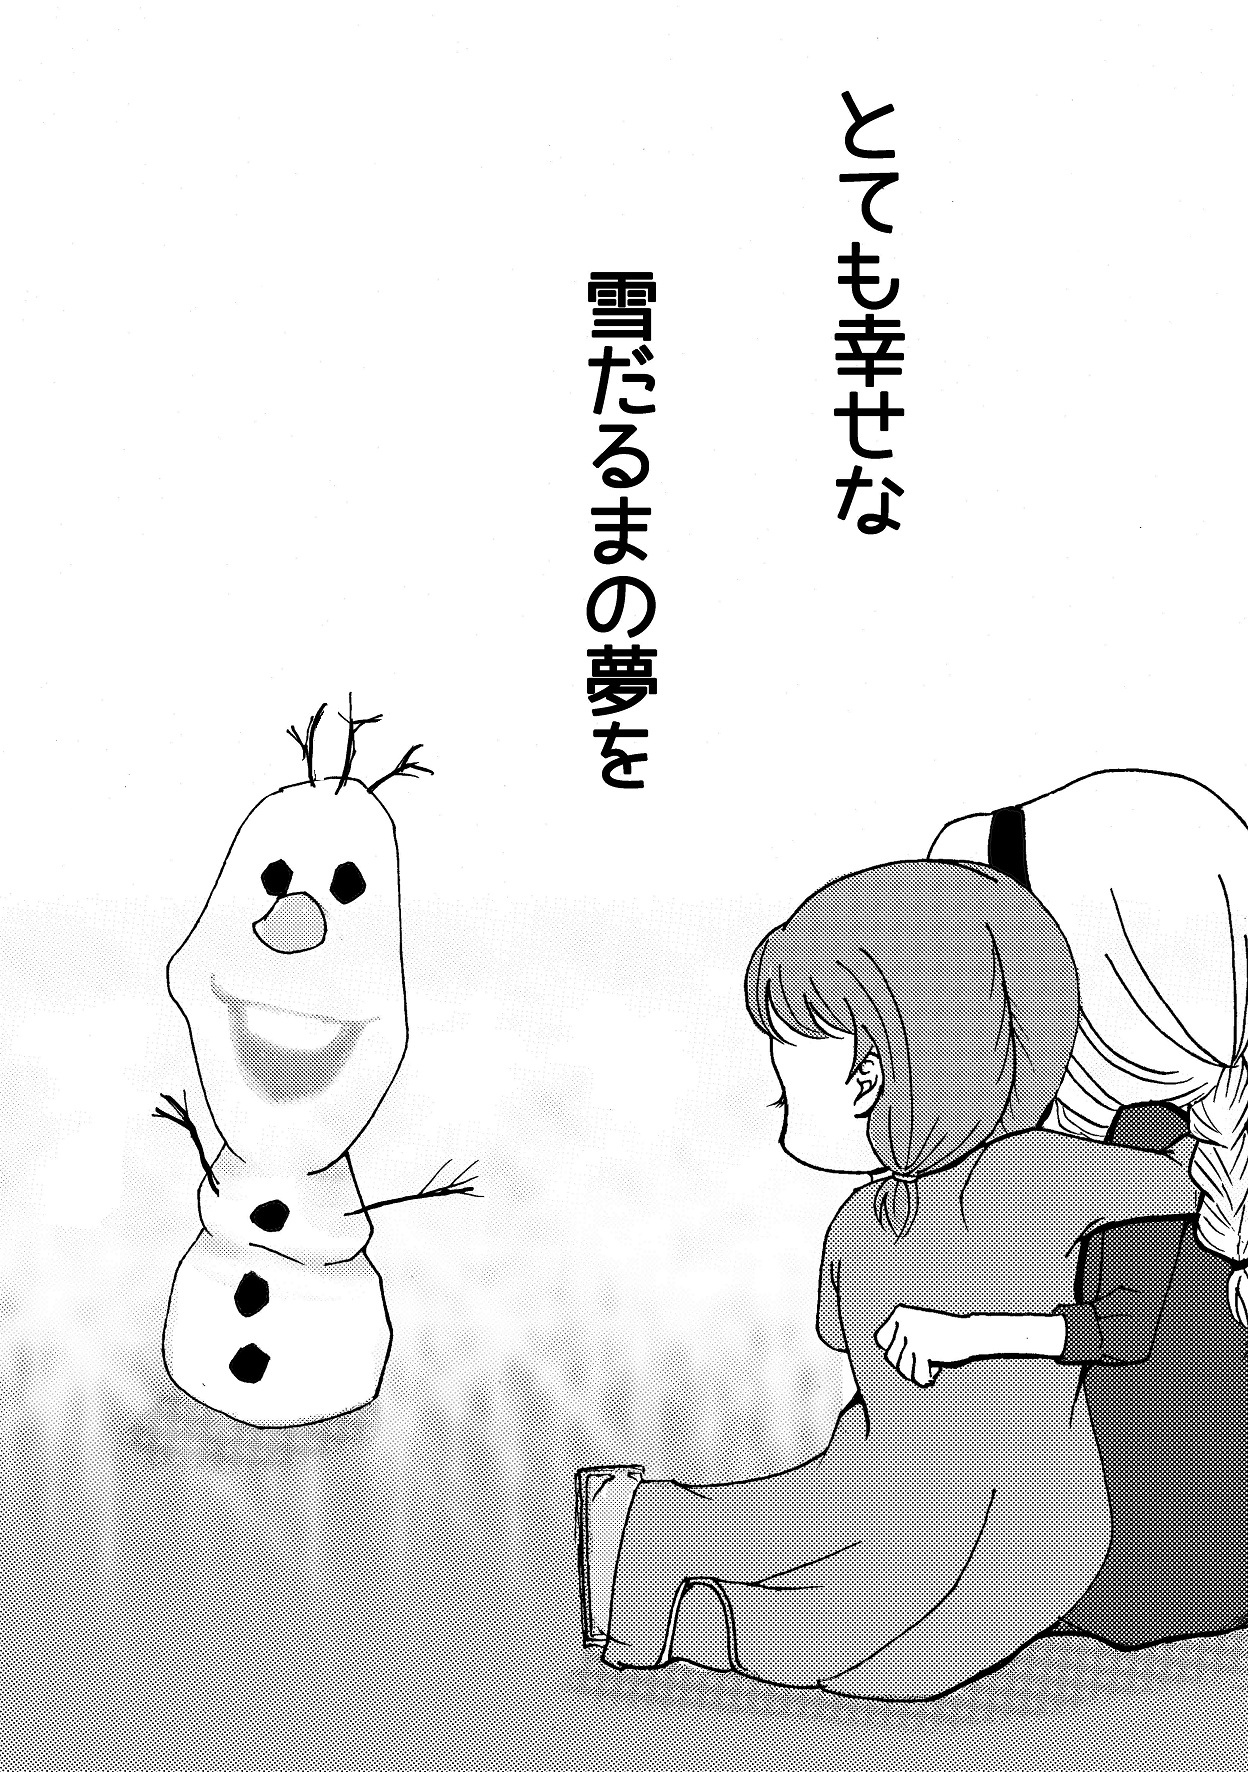 [南中尋定] しあわせなゆきだるま A happy snowman (アナと雪の女王)